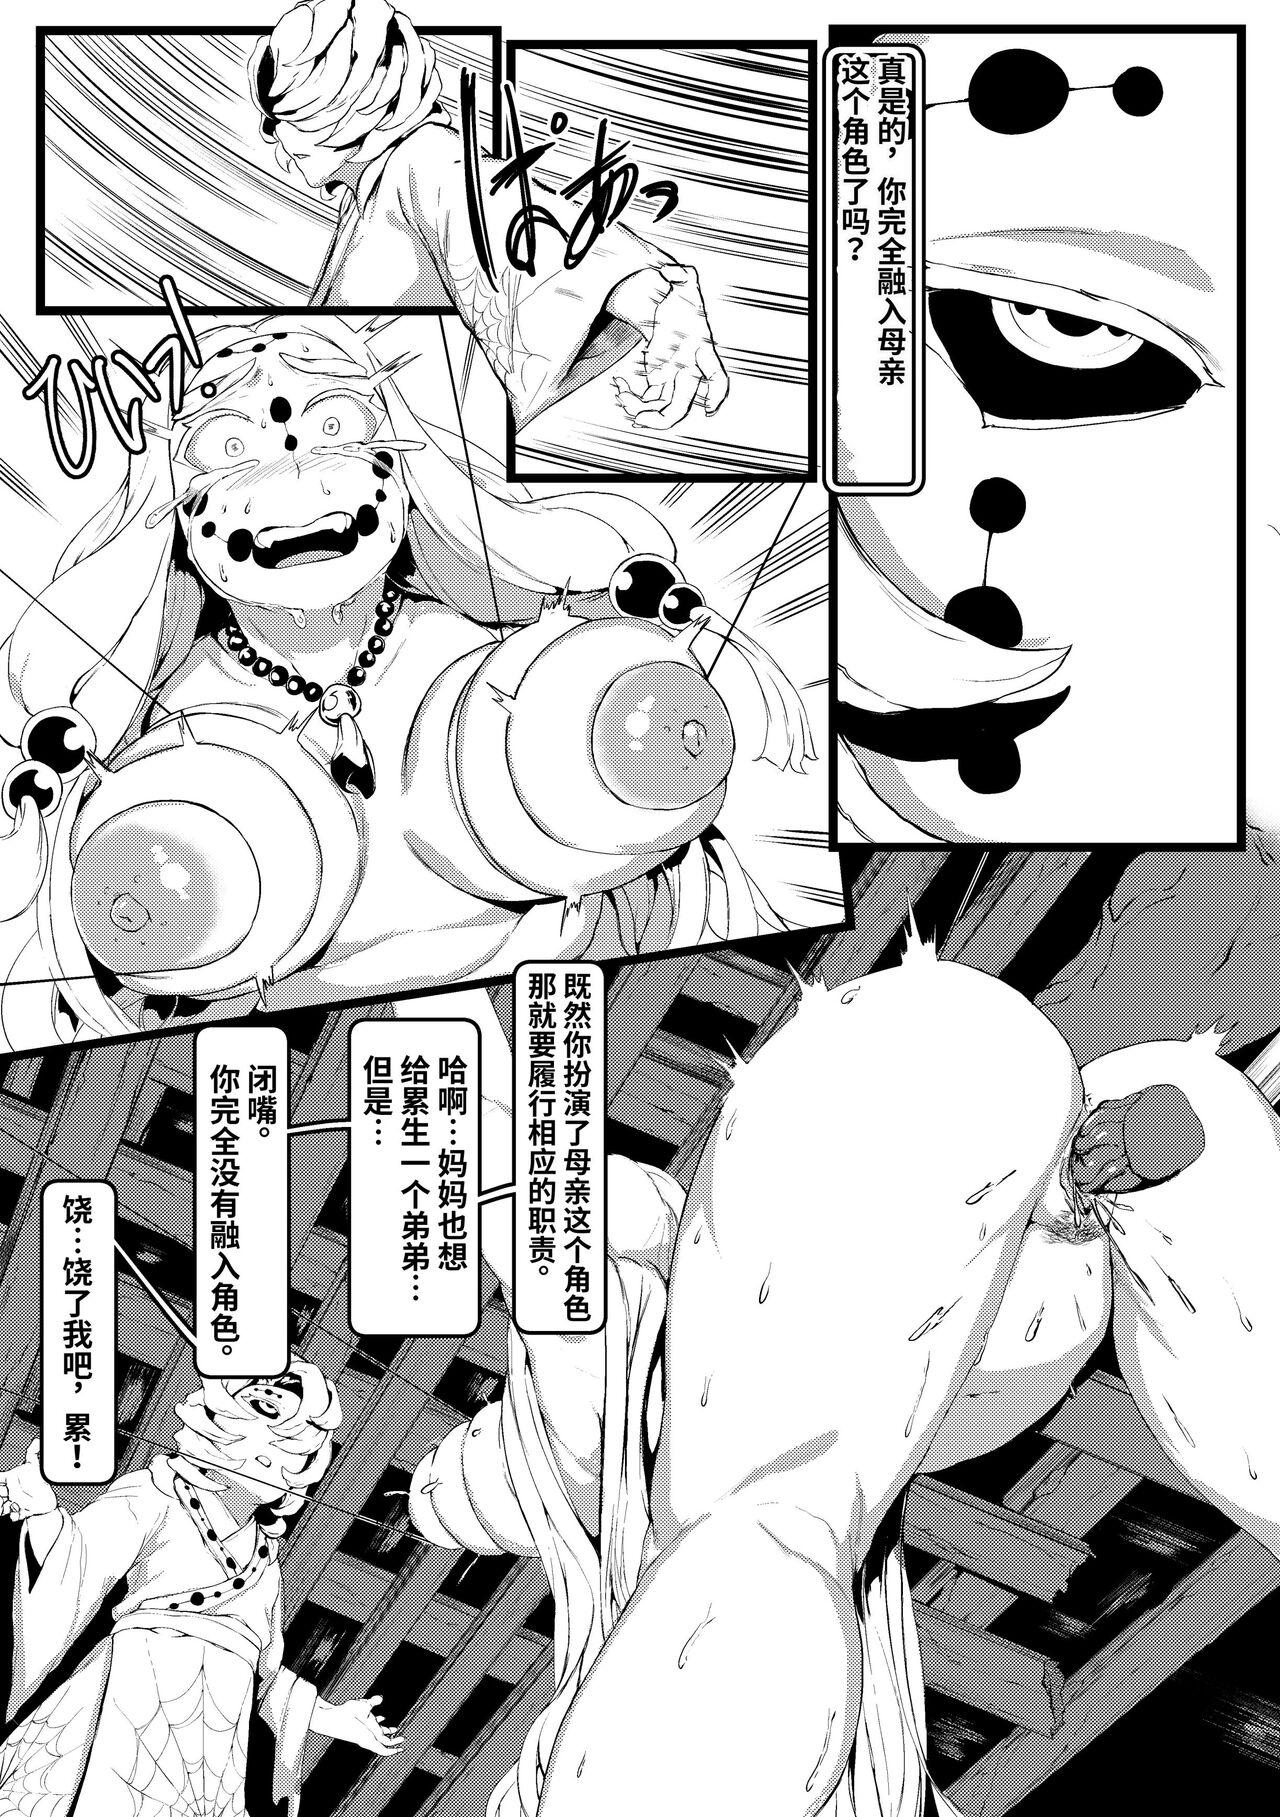 Boy Spider Family - Kimetsu no yaiba | demon slayer Bang Bros - Page 6